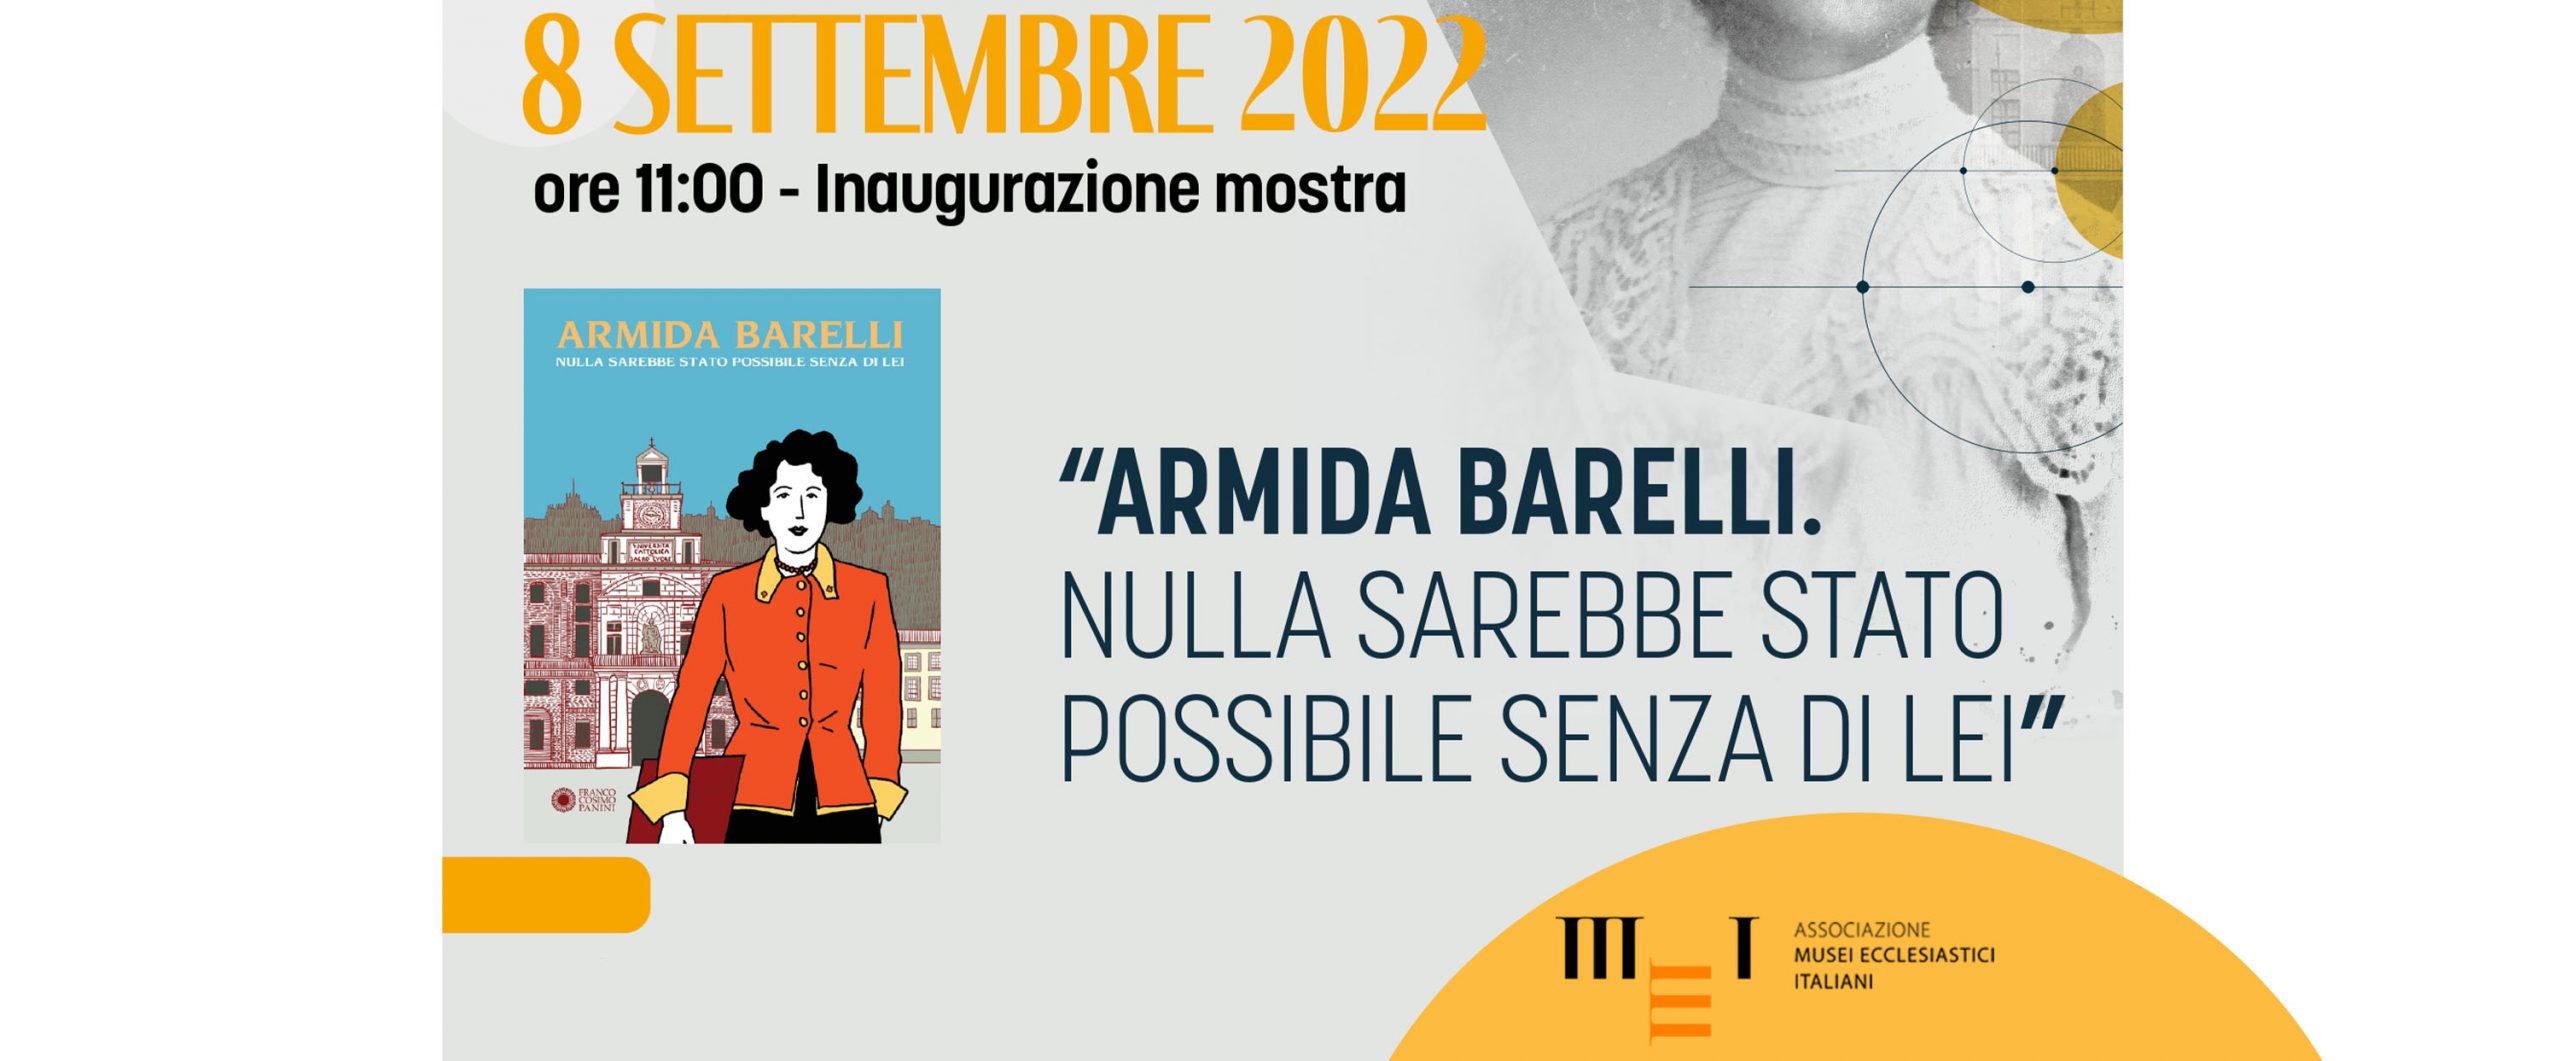 Mostra Armida Barelli - 8 settembre 2022 Museo Diocesano di Reggio Calabria